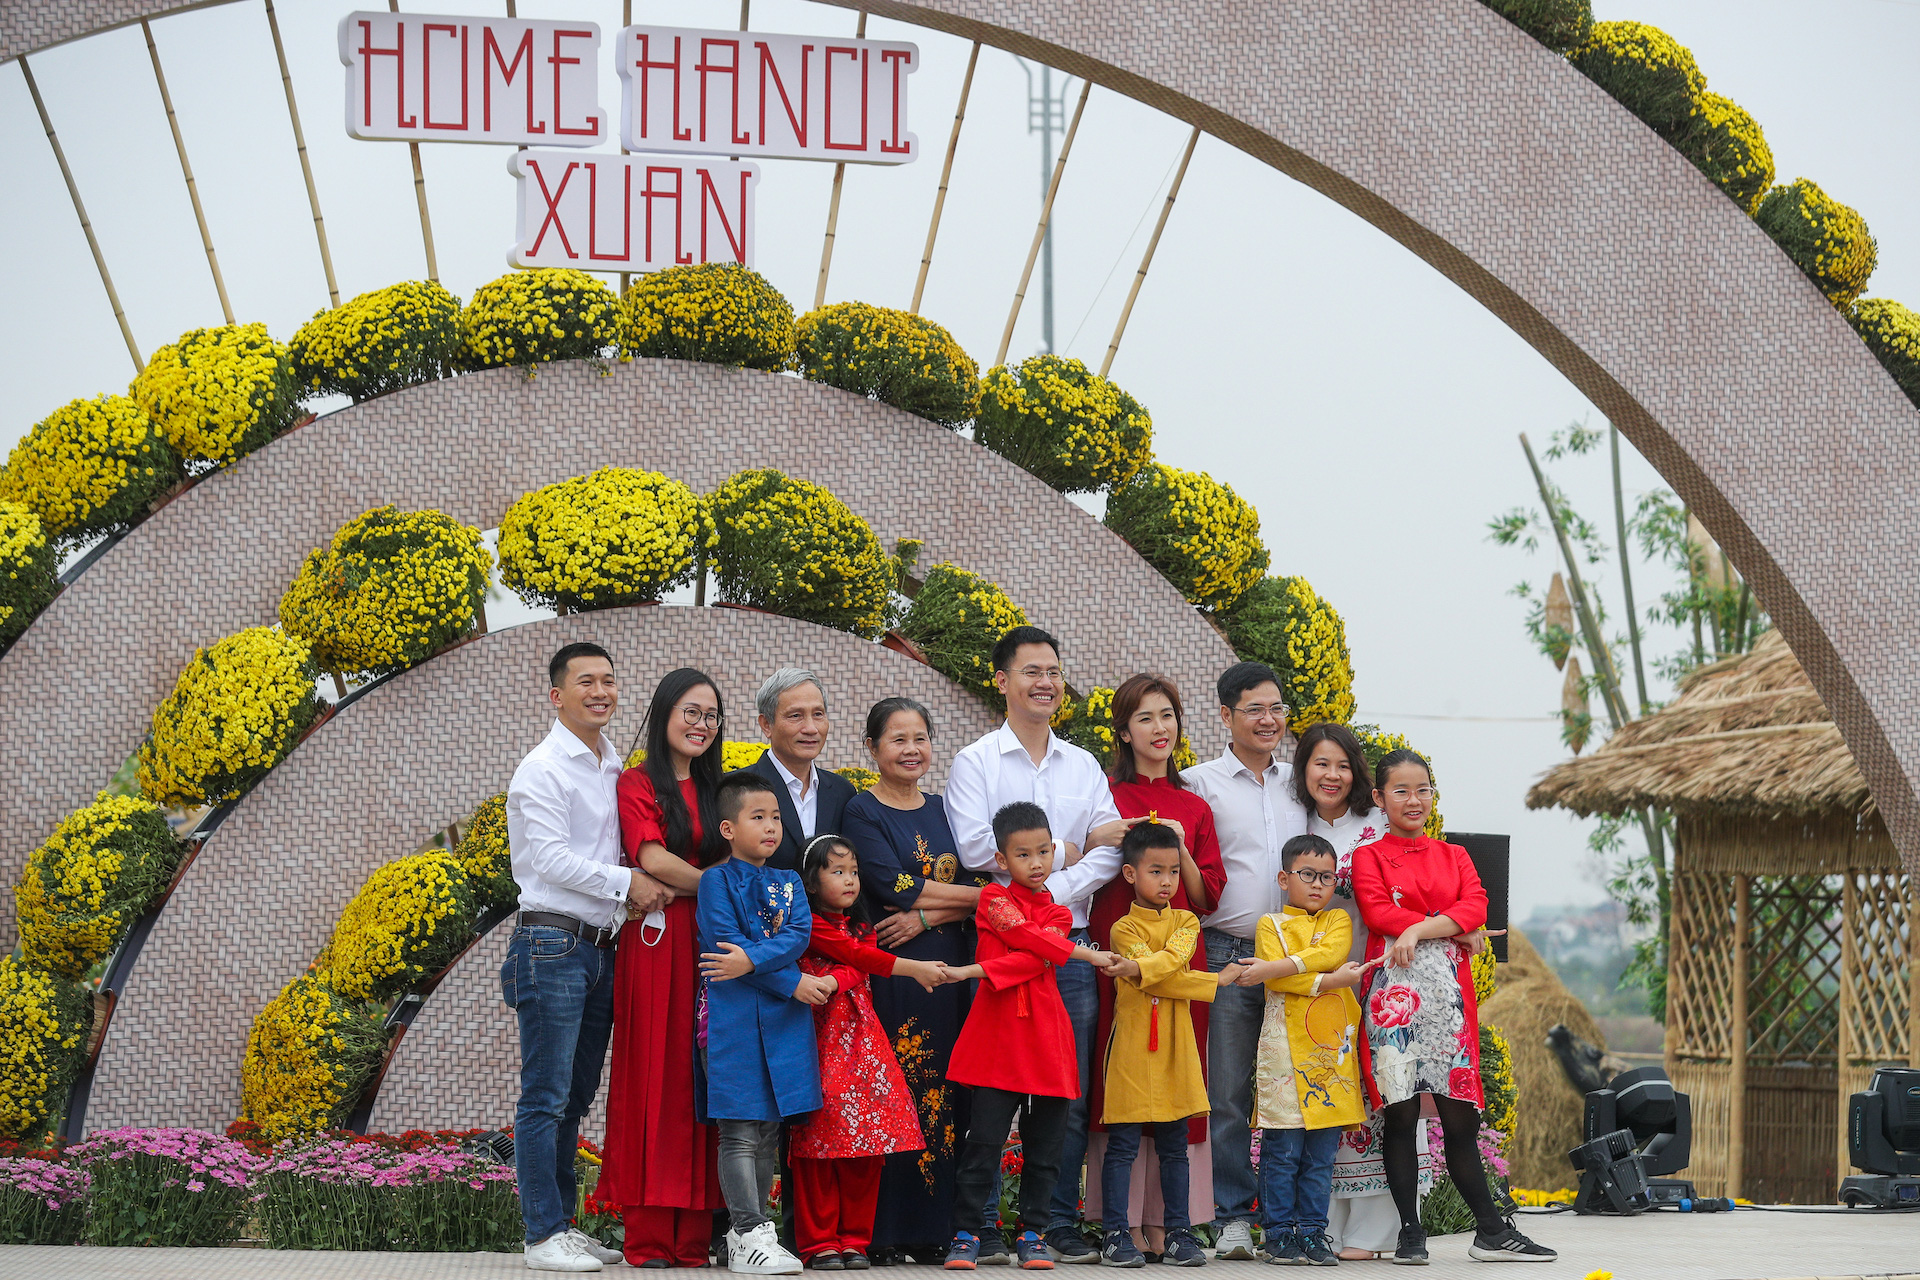 Mở cửa đường hoa Home Hanoi Xuan 2021 - Ảnh 1.